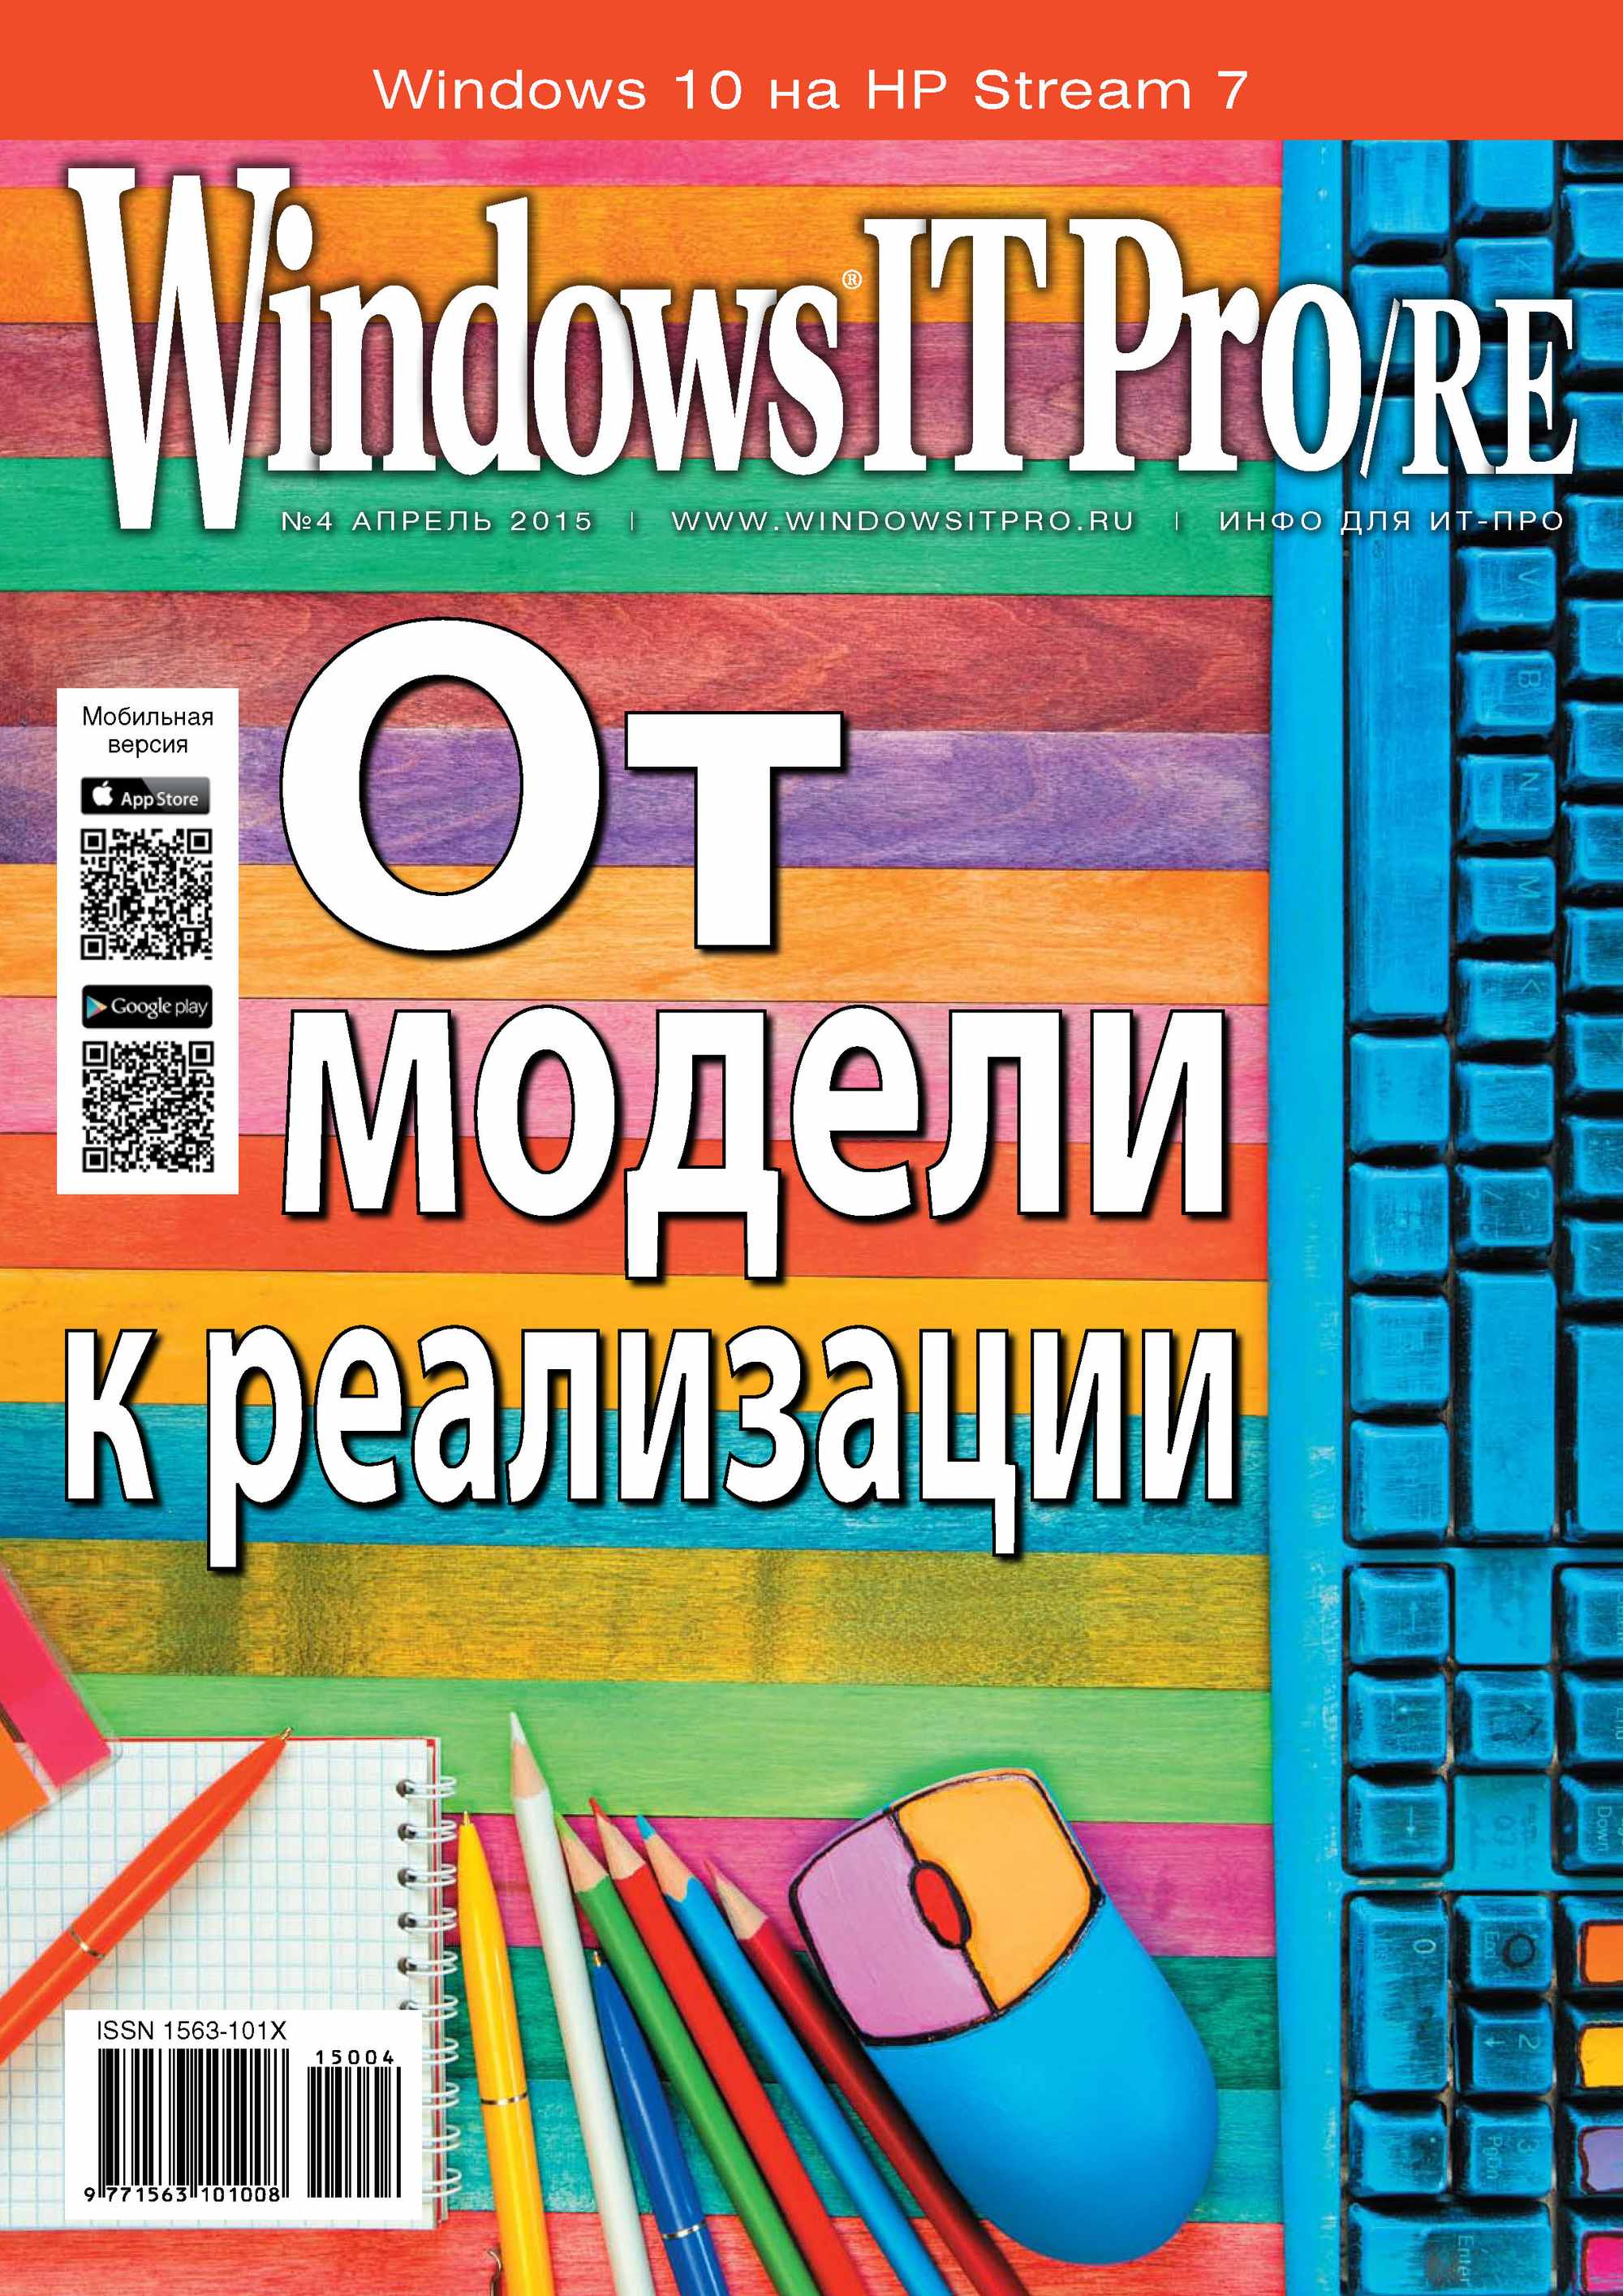 Windows IT Pro/RE№04/2015